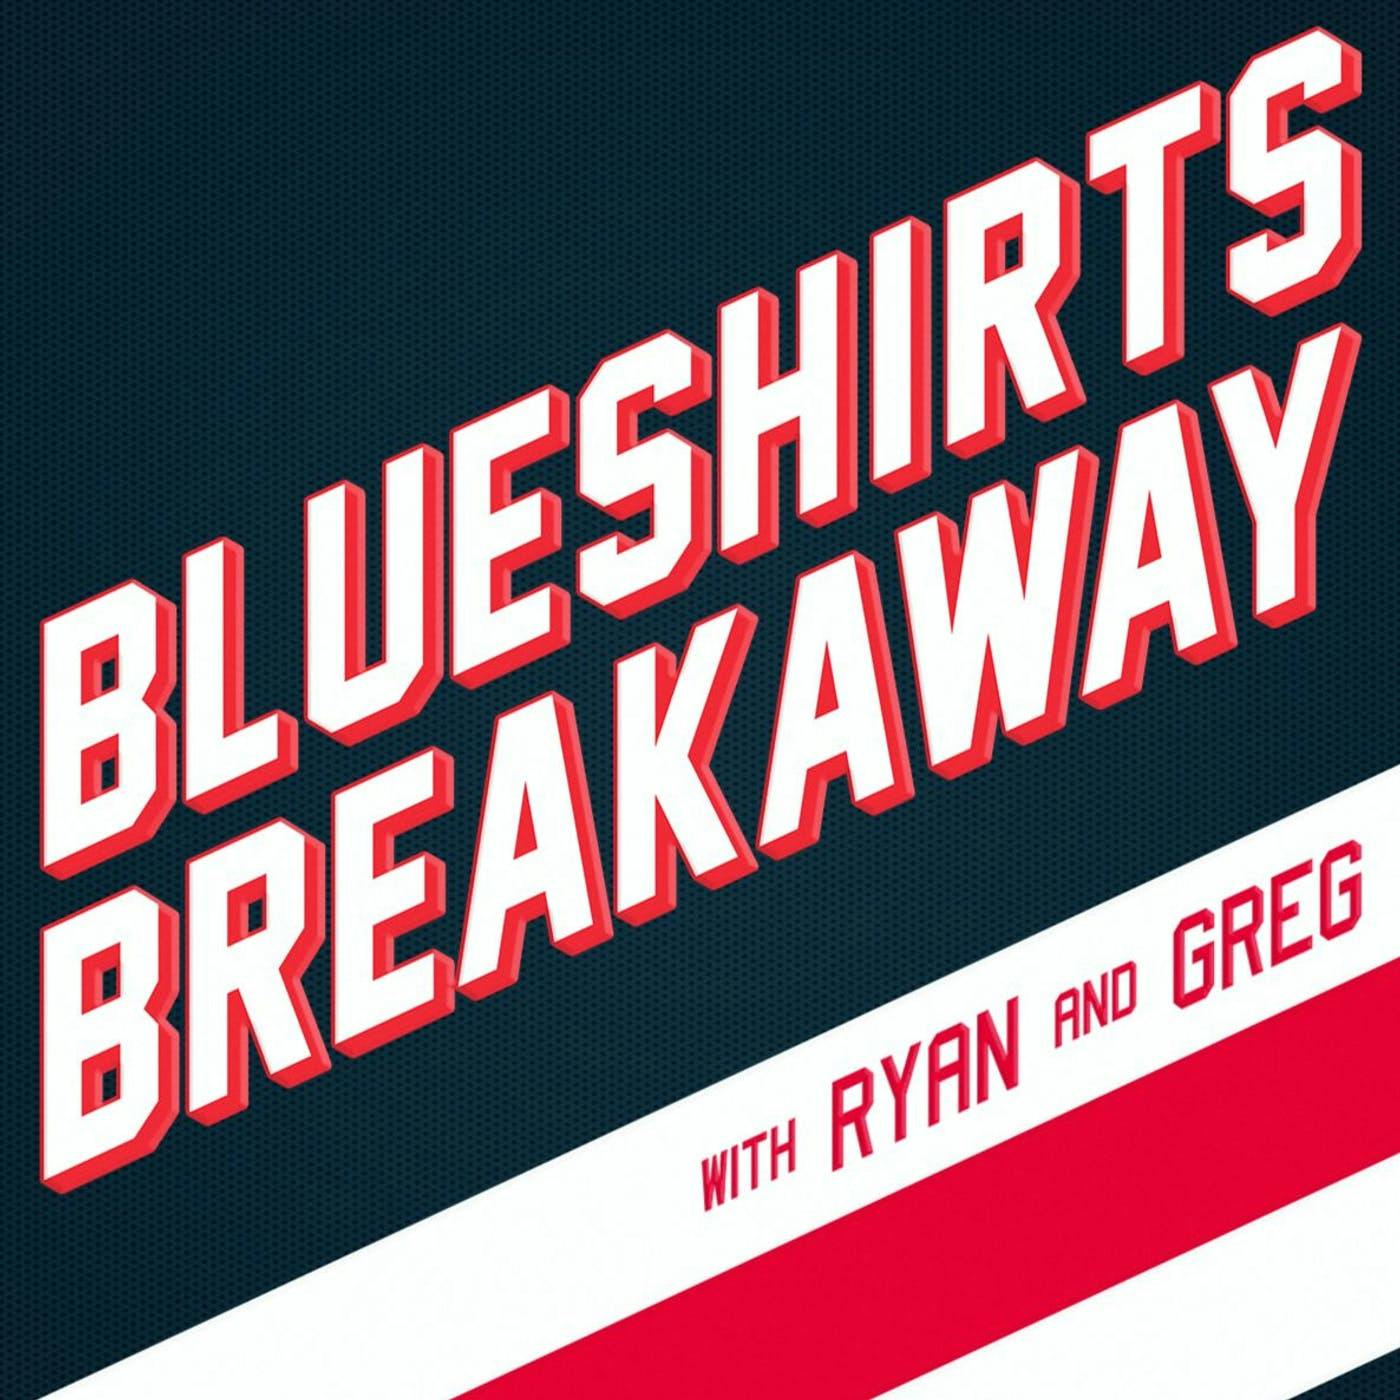 Blueshirts Breakaway Bonus Nonsense: MLB Playoff Preview